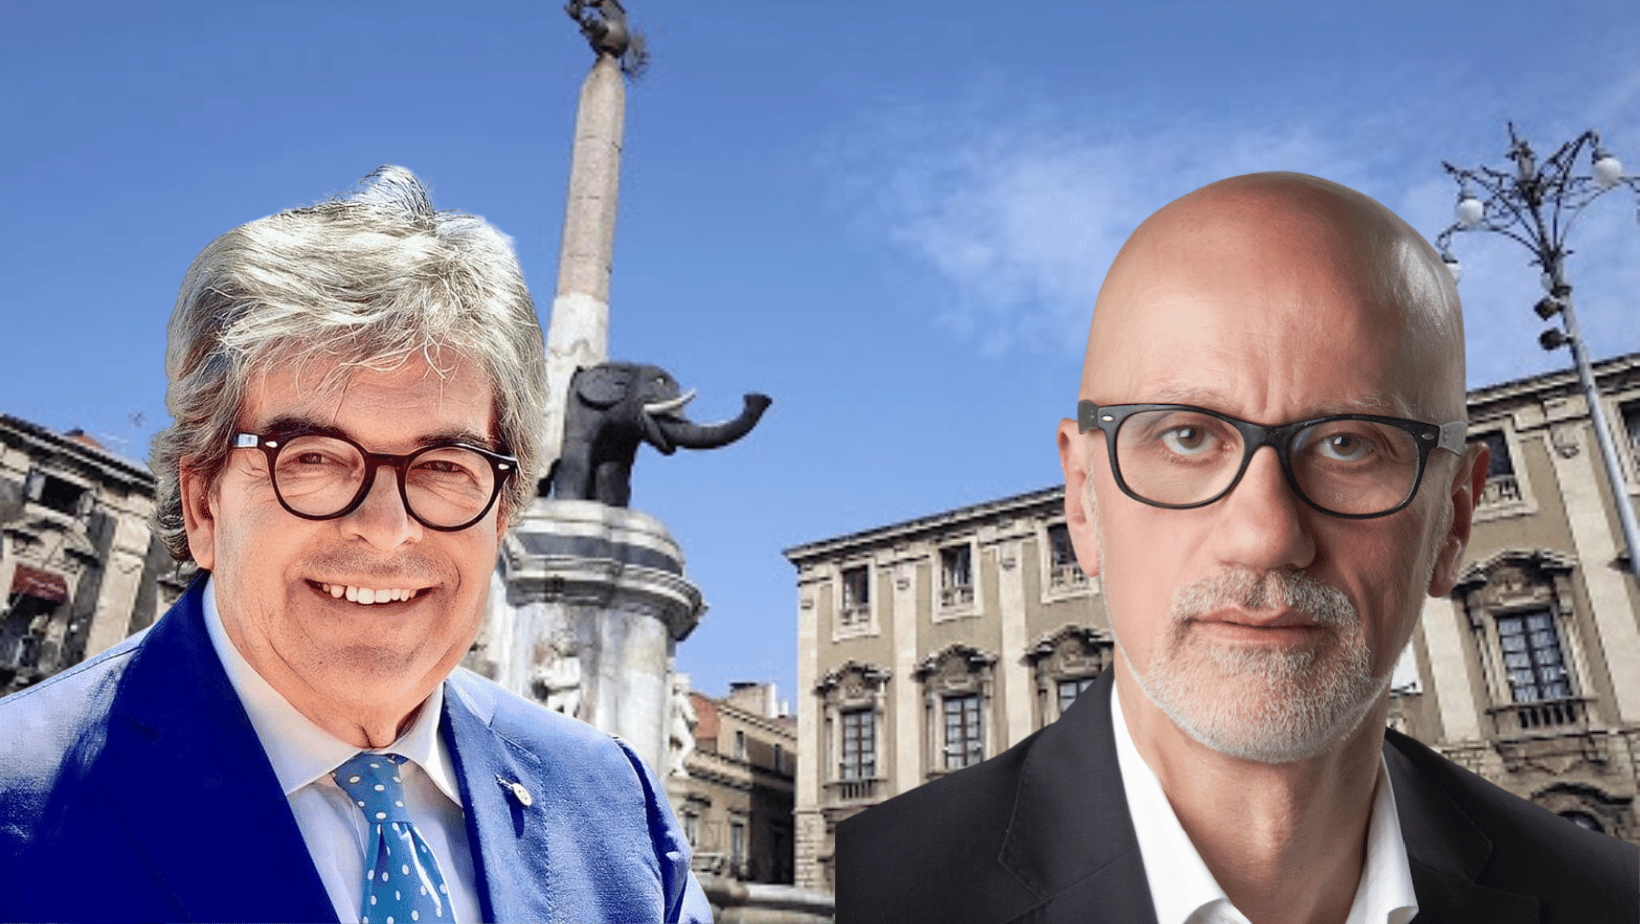 Elezioni Catania, Bianco dice sì a Caserta: adesso la coalizione di centrosinistra è tutta unita